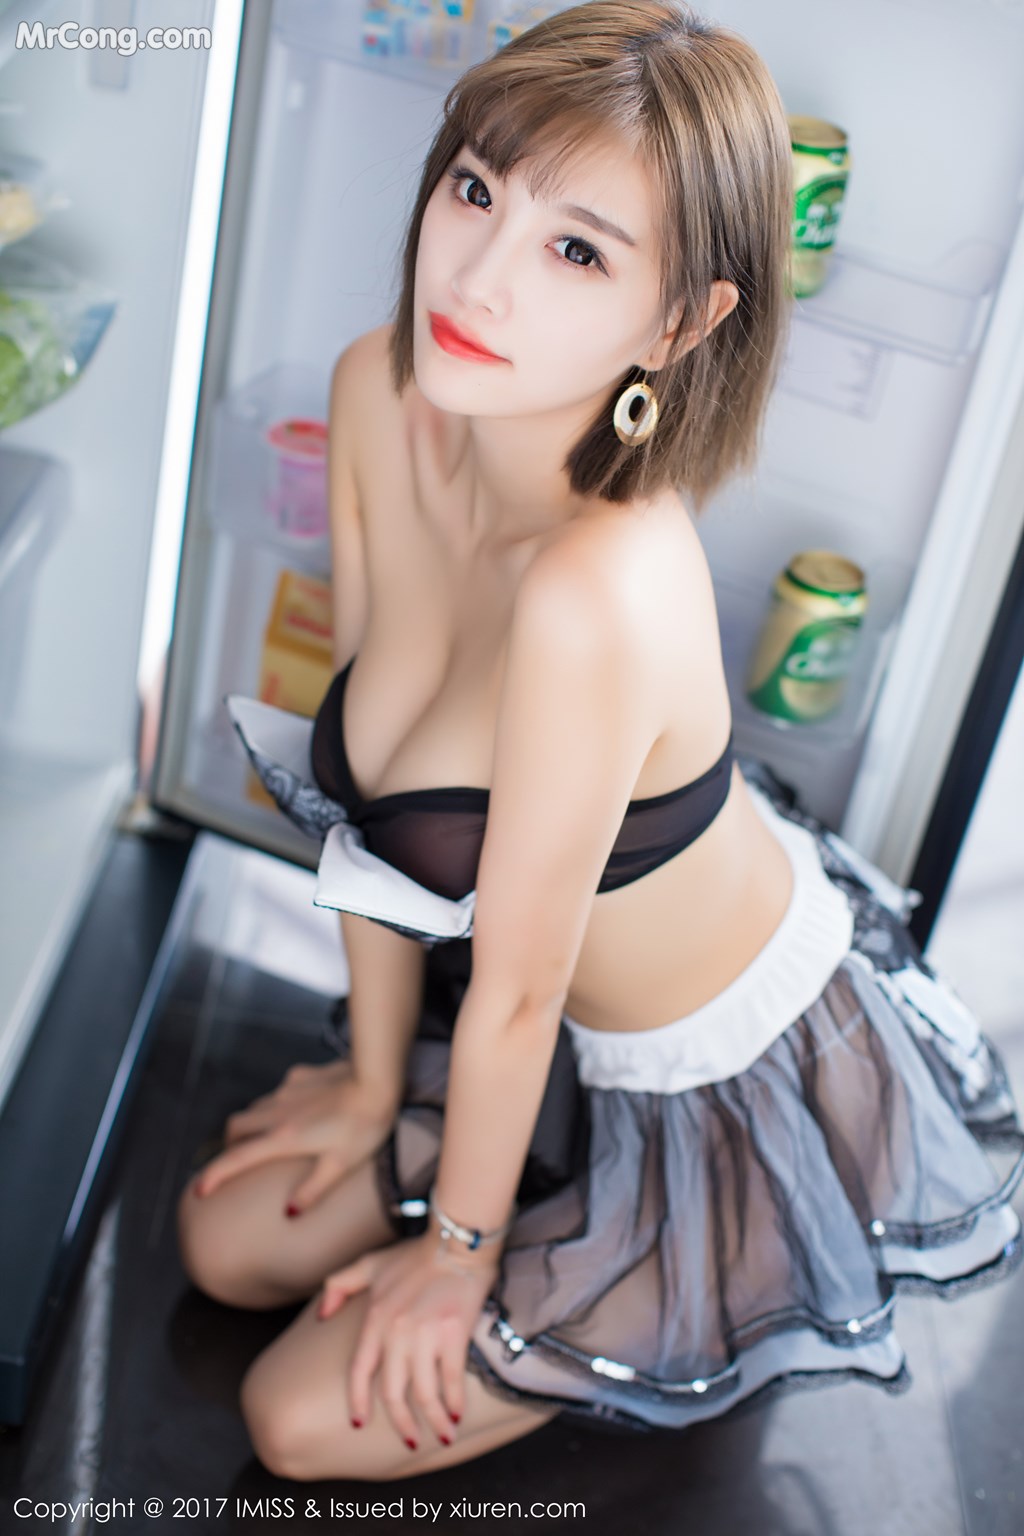 IMISS Vol. 2001: Model Yang Chen Chen (杨晨晨 sugar) (39 photos)